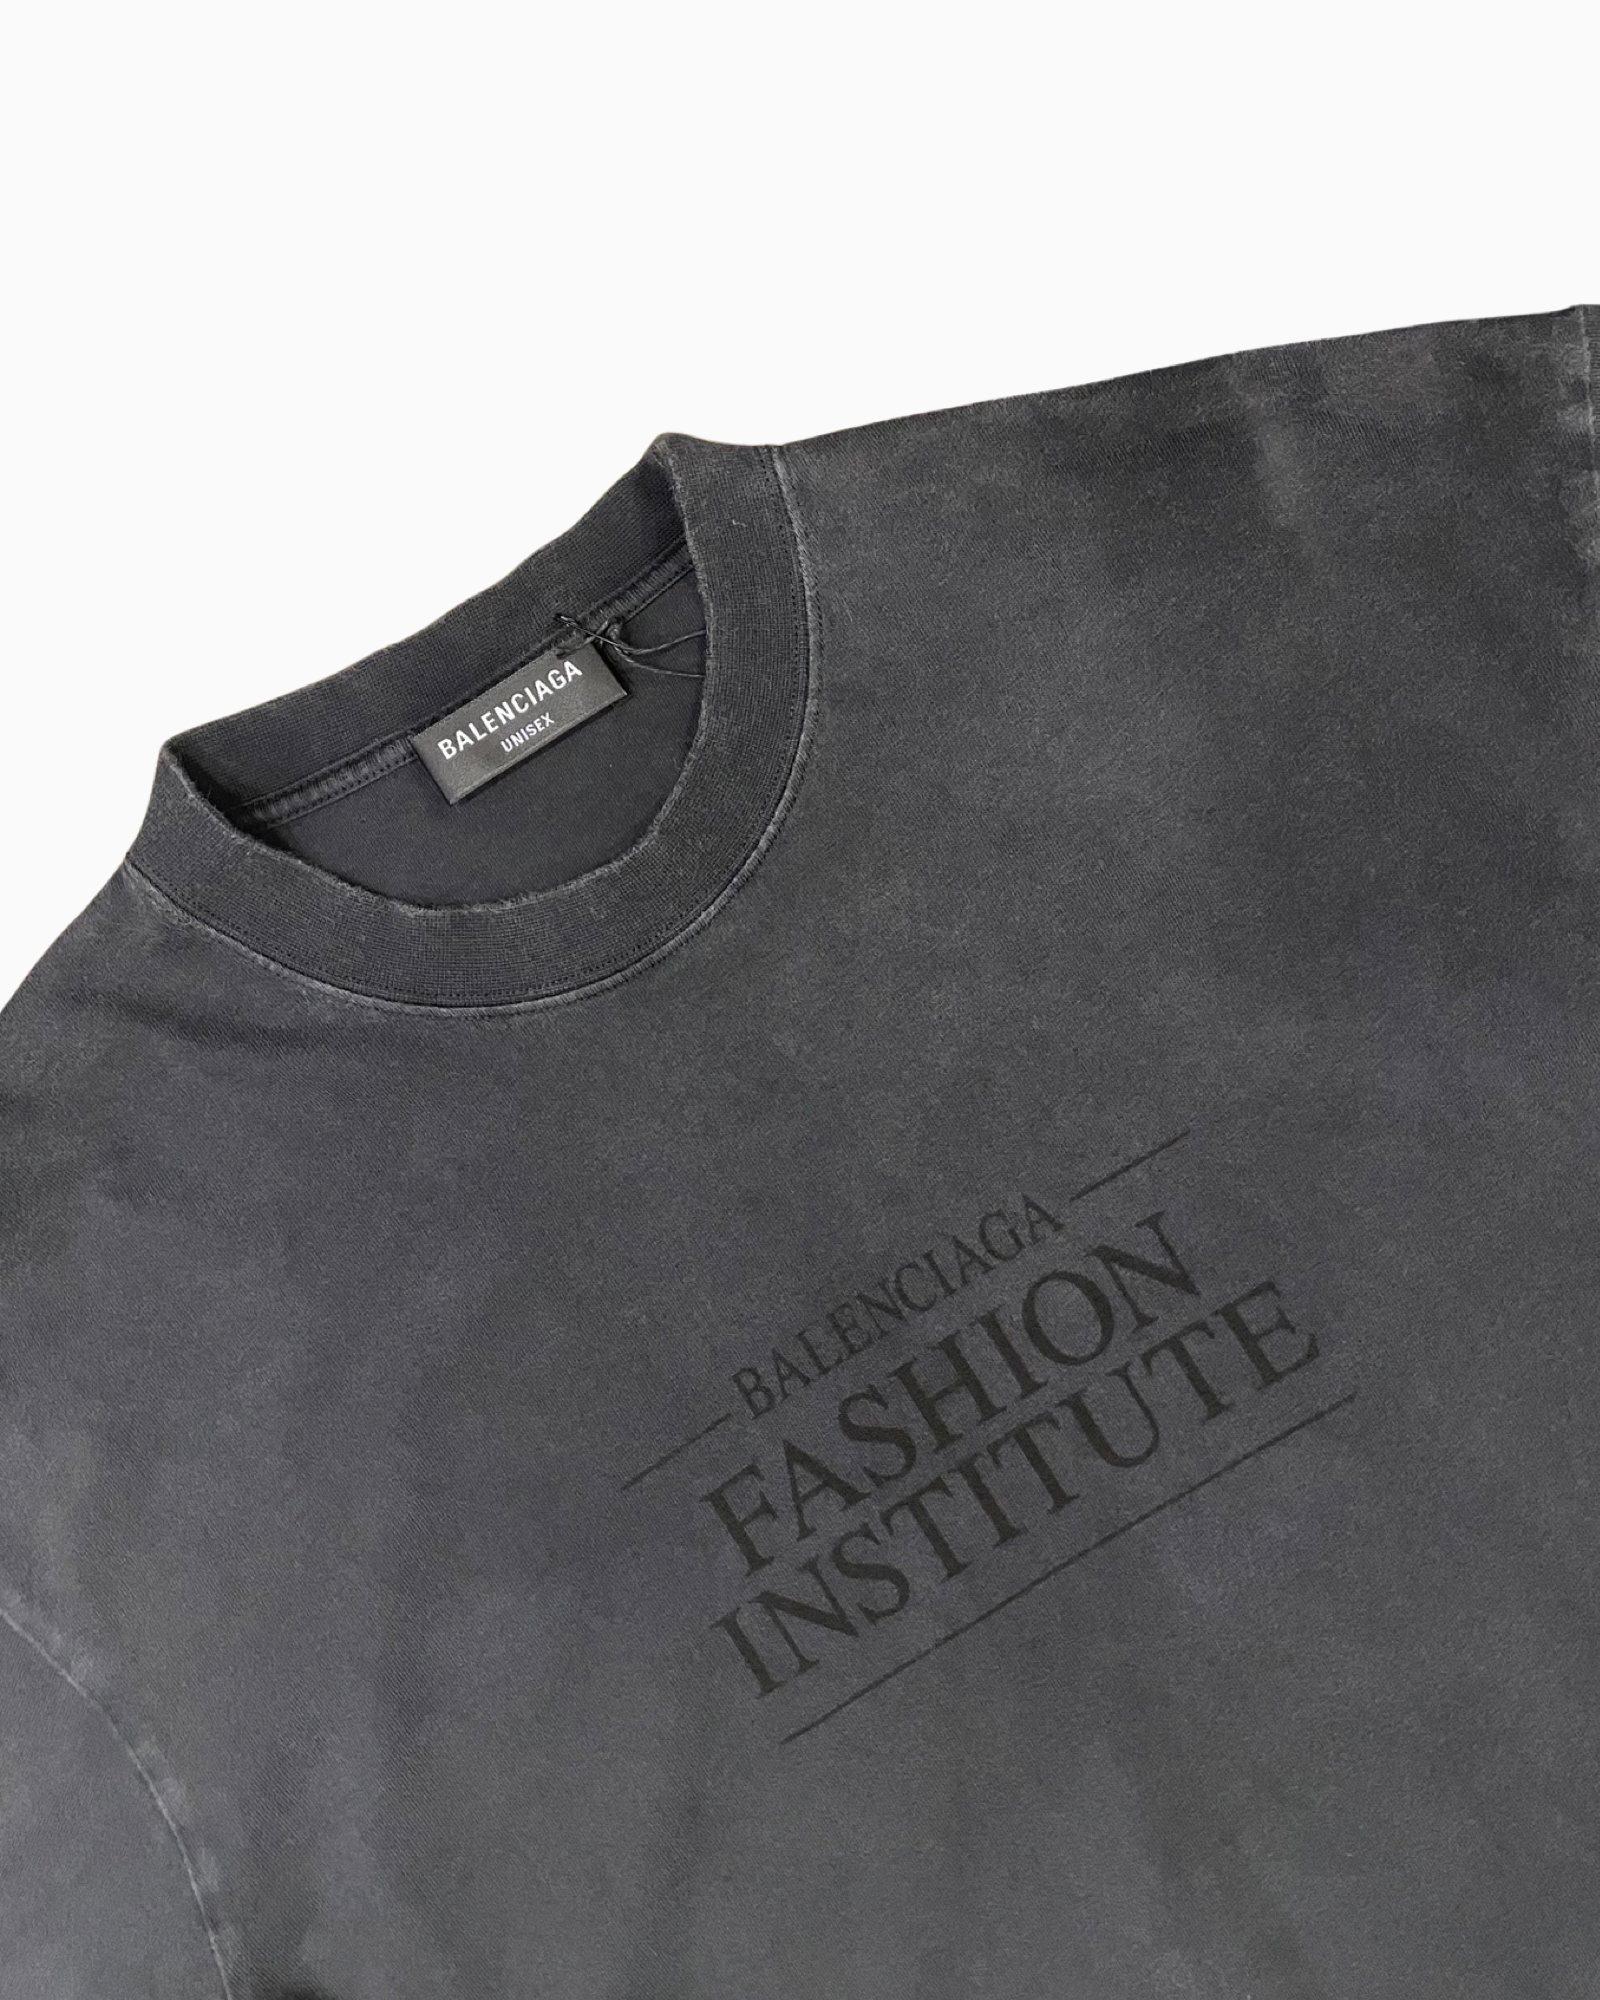 Balenciaga Fashion Institute Logo T-shirt – FUTURO